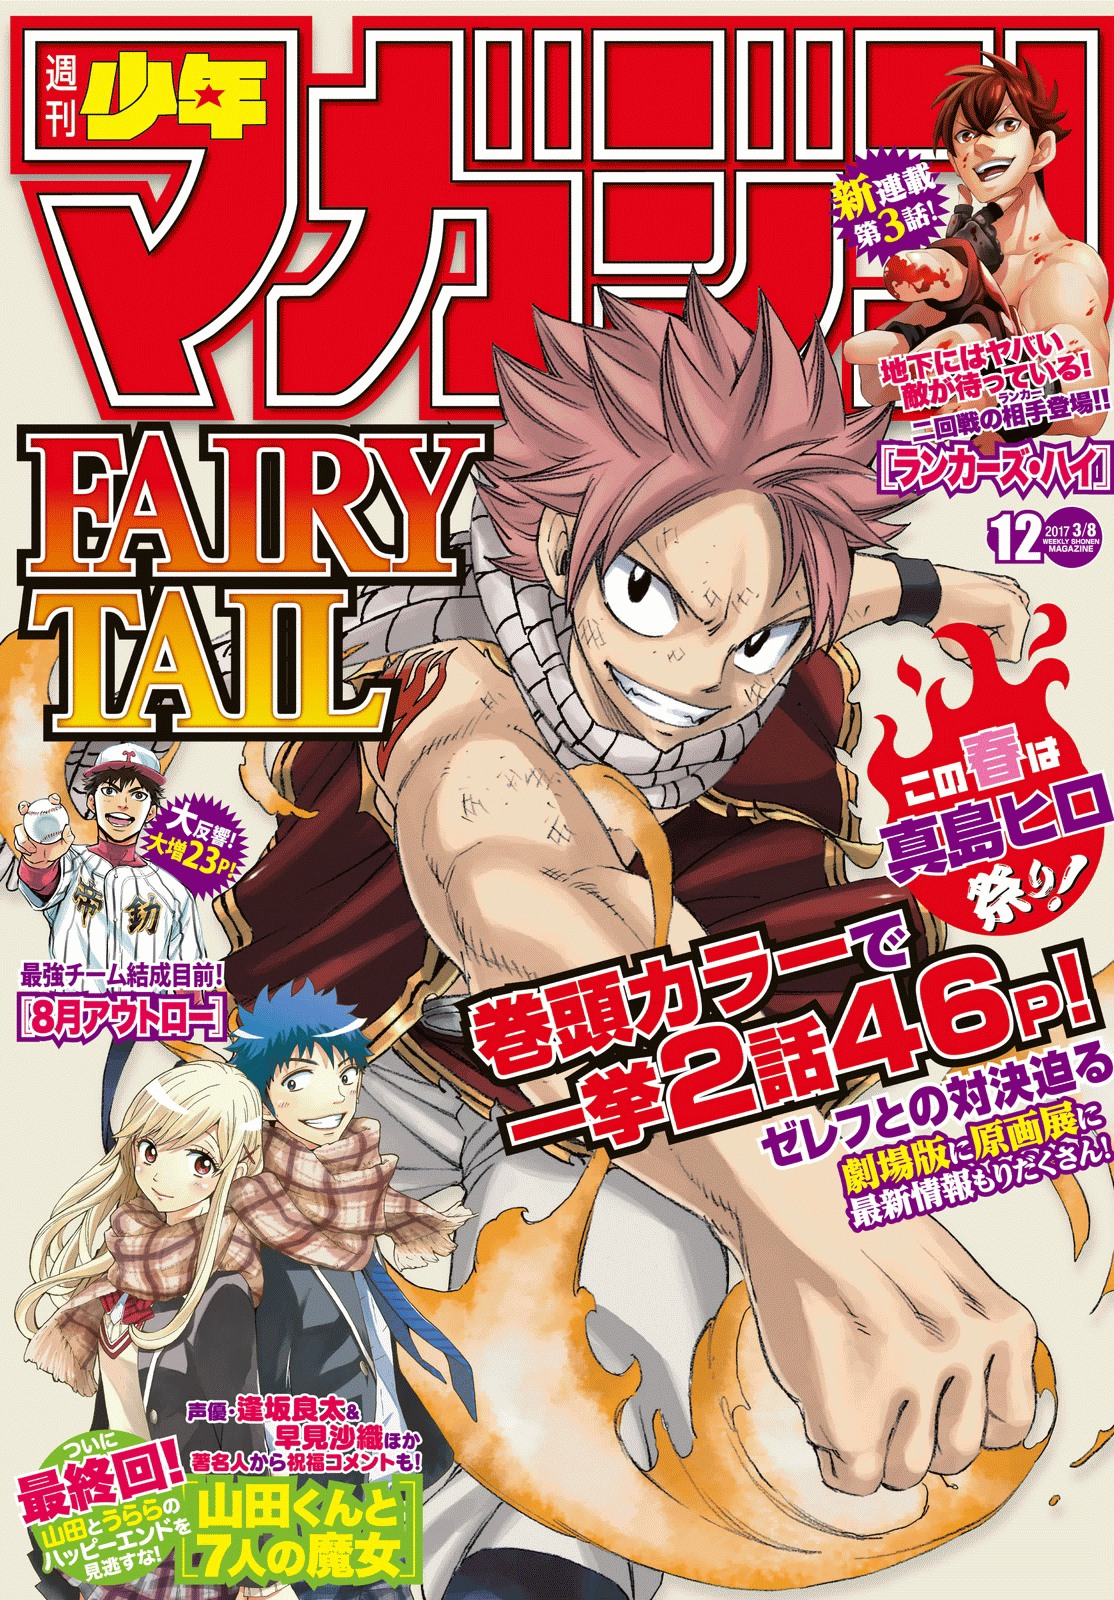 Com 60 milhões de cópias, mangá 'Fairy Tail' está em seu arco